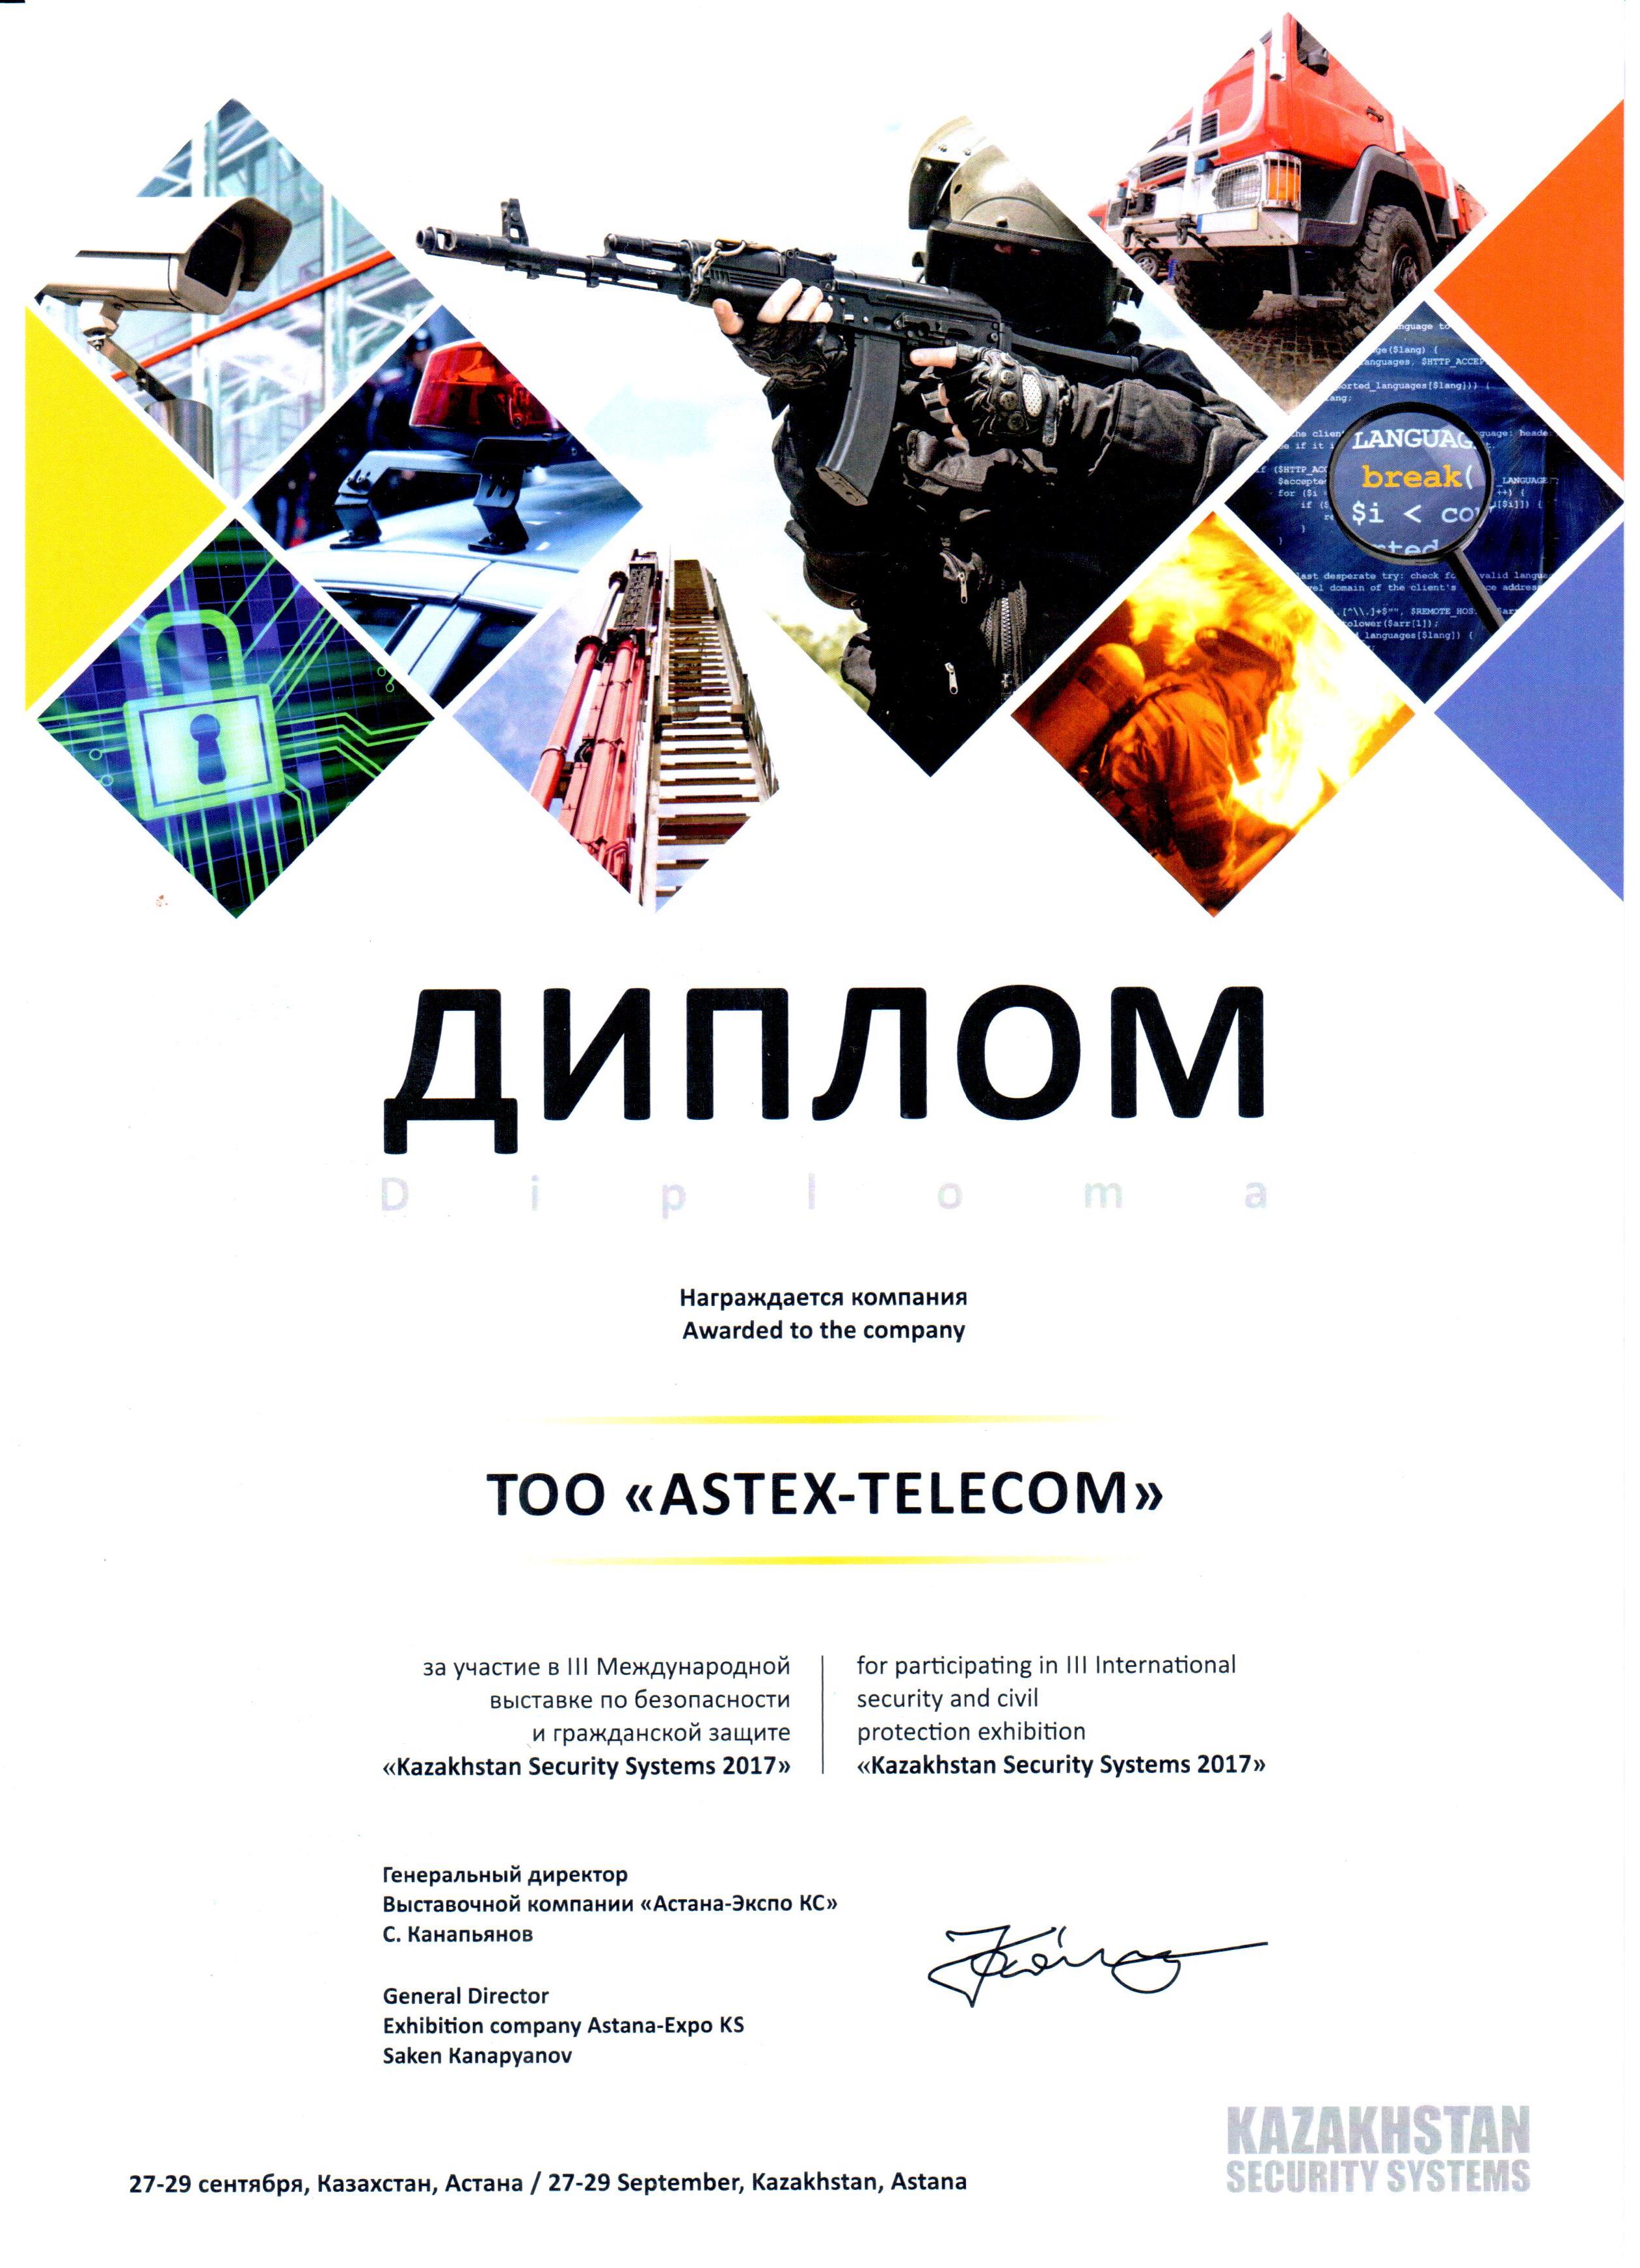 ТОО "ASTEX-telecom" приняло активное участие в международной выставке KSS 2017 